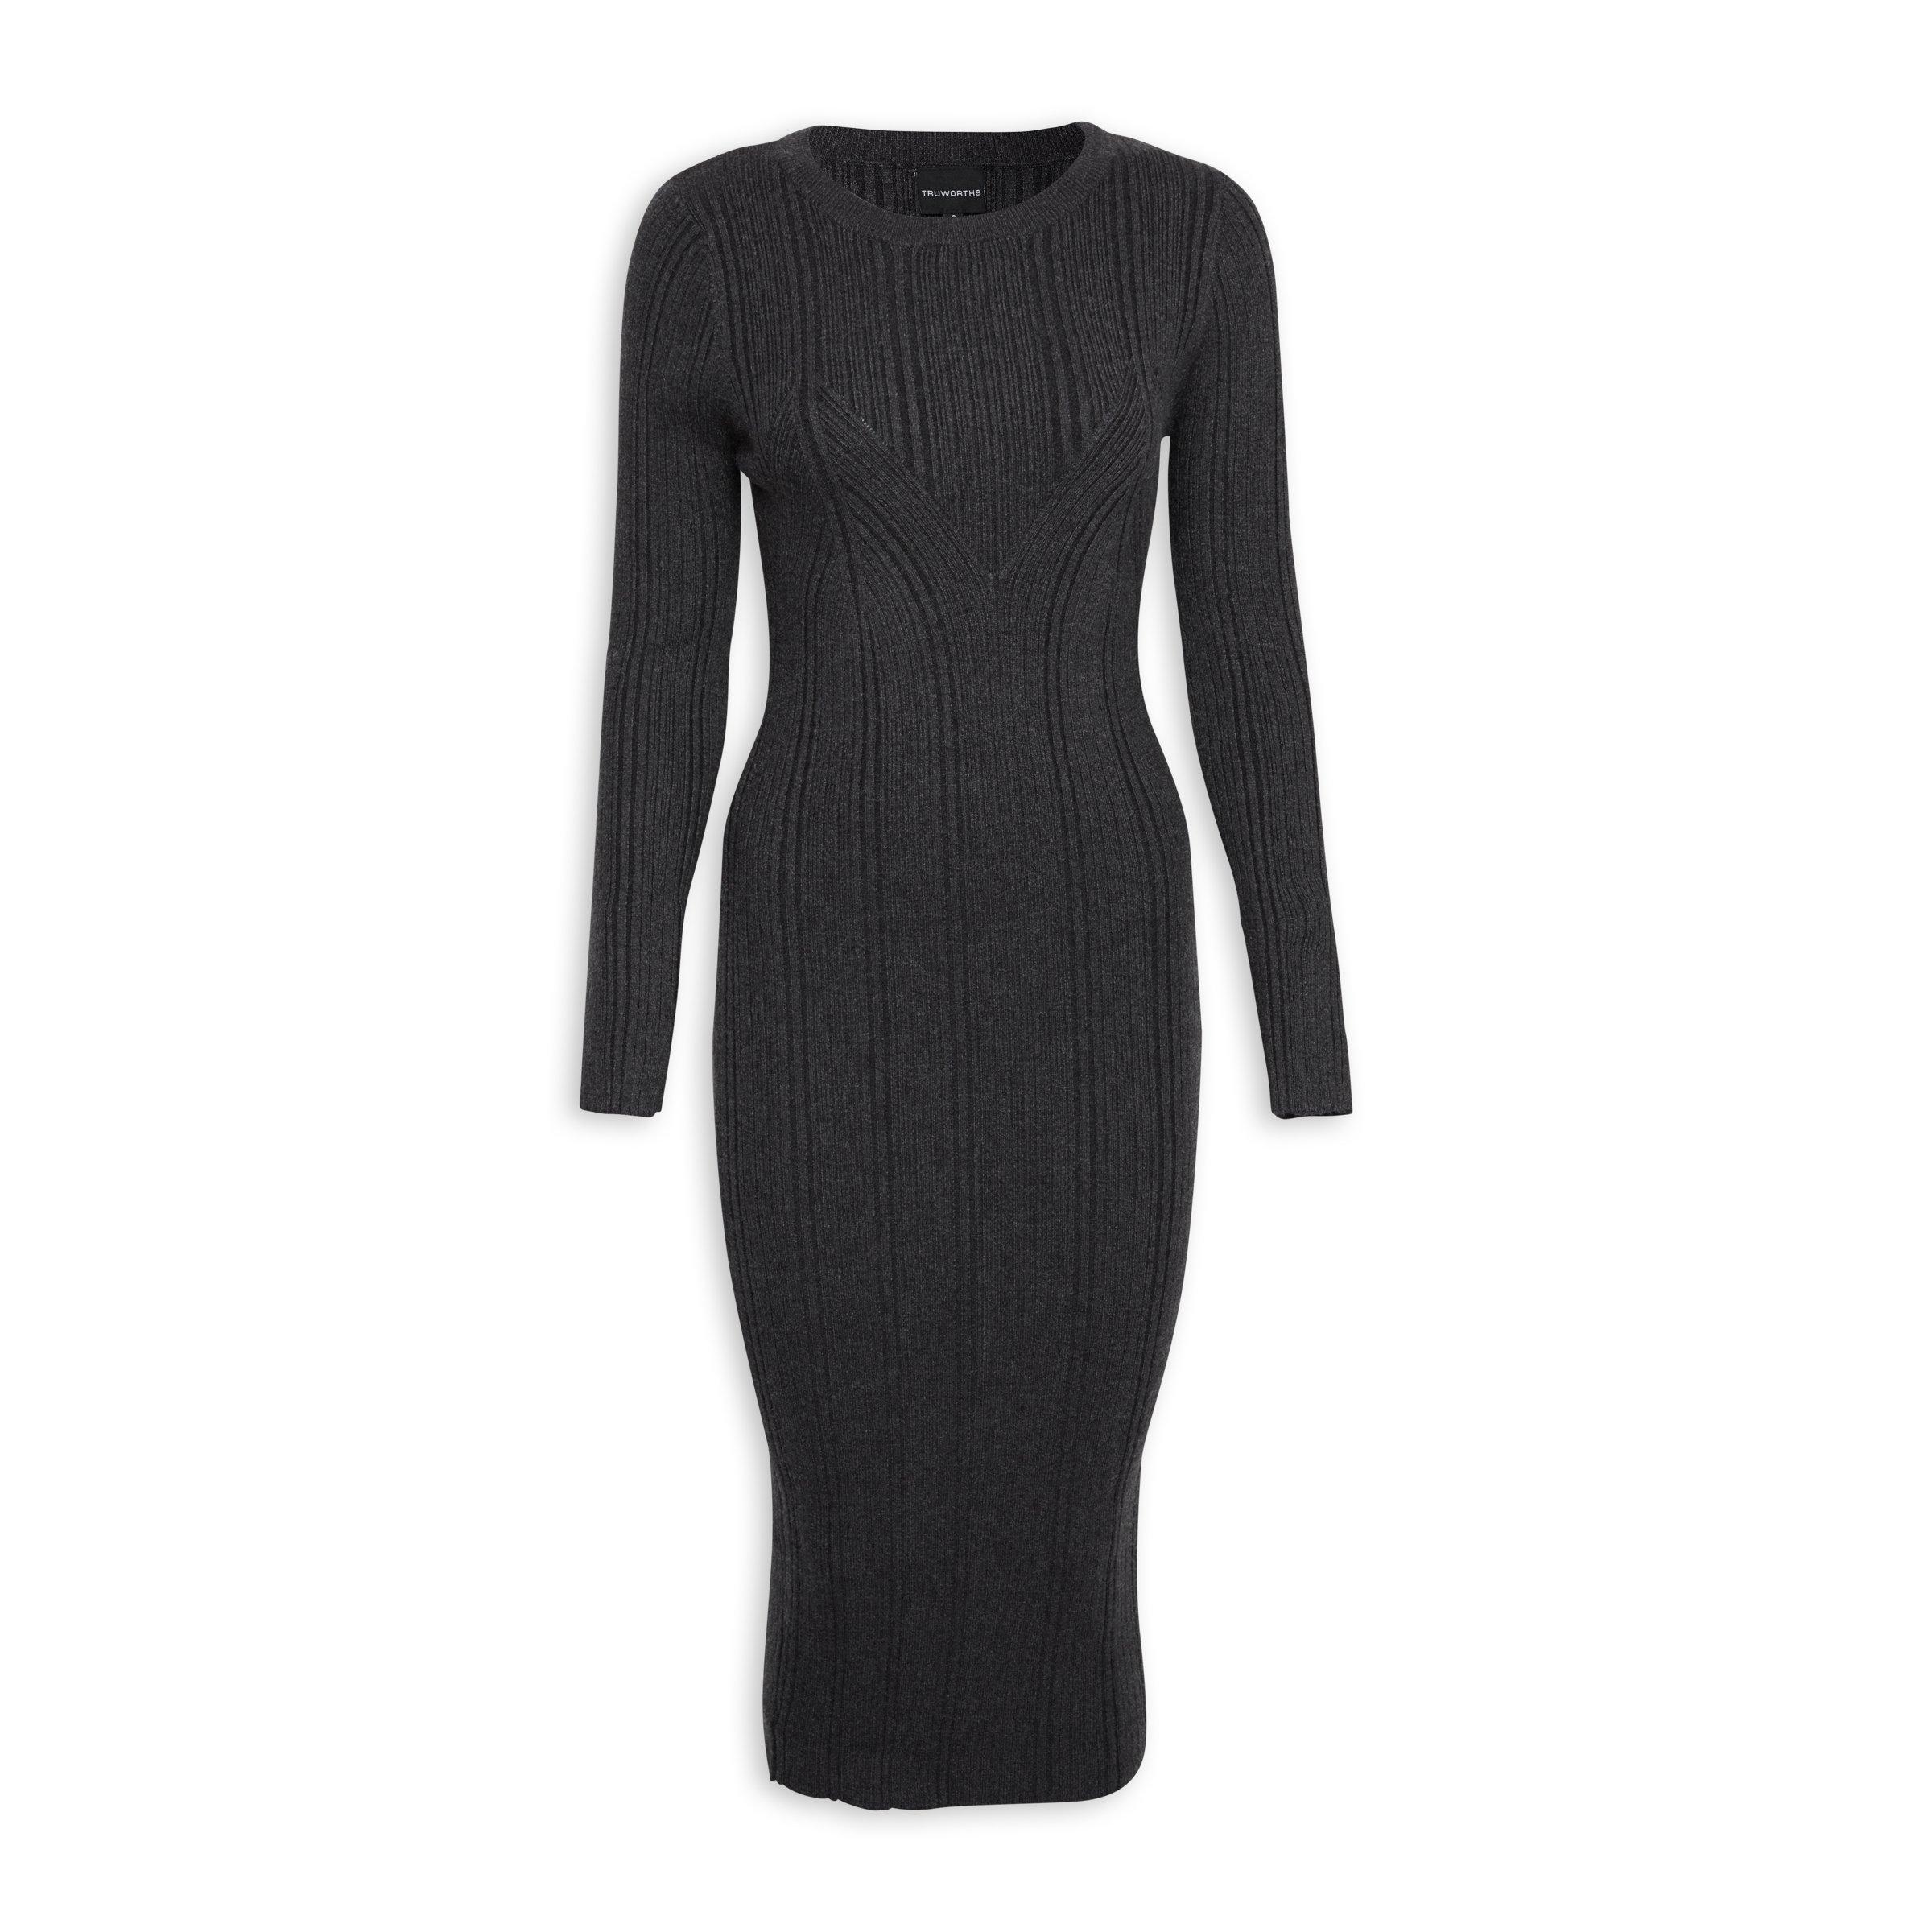 Buy Truworths Charcoal Bodycon Dress Online | Truworths